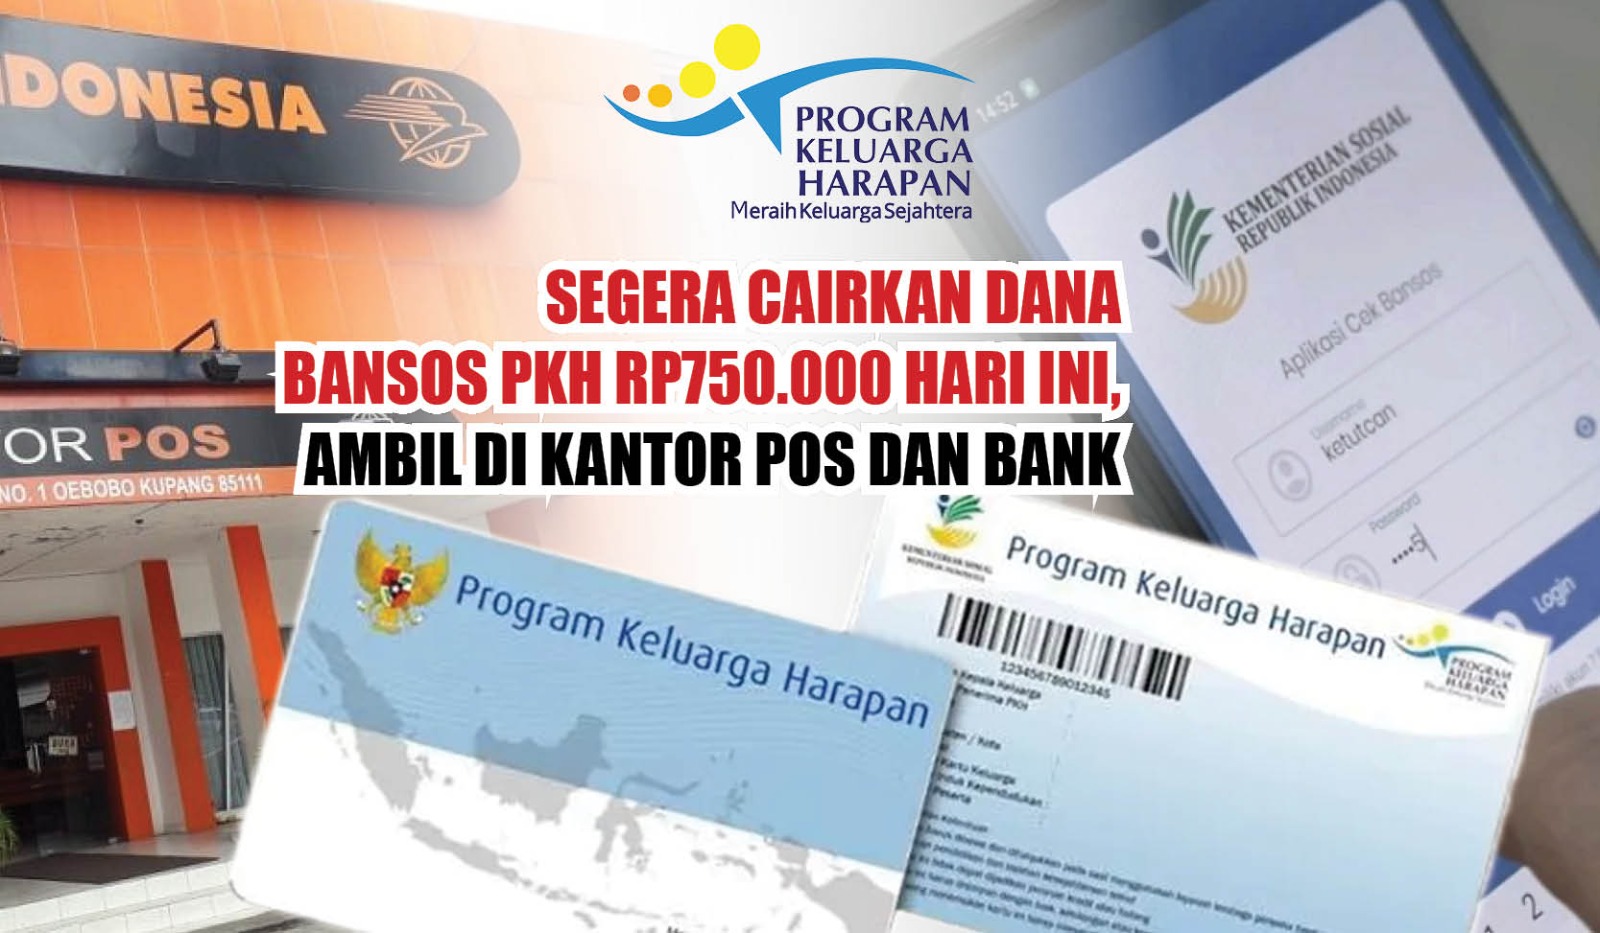 Segera Cairkan Dana Bansos PKH Rp750.000 Hari Ini, Ambil di Kantor Pos dan Bank